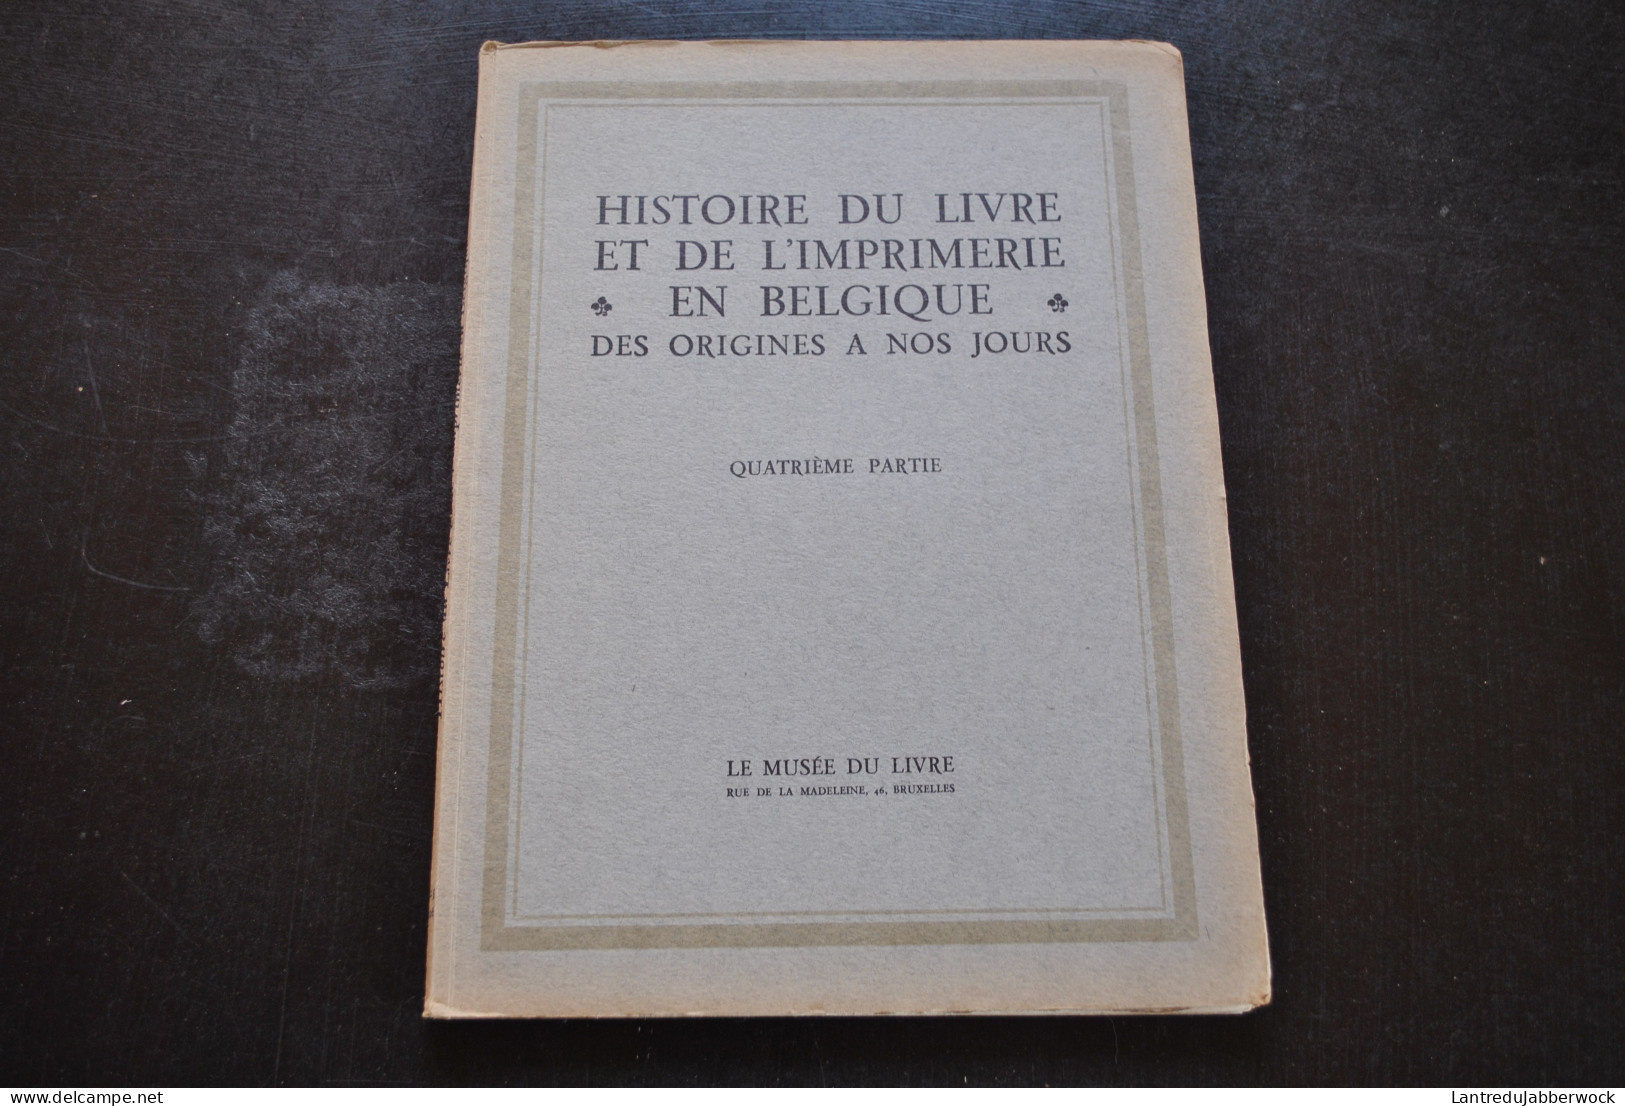 Histoire du Livre et de l'imprimerie en Belgique 5/6 Tomes Deuxième Troisième Quatrième Cinquième Sixième Partie